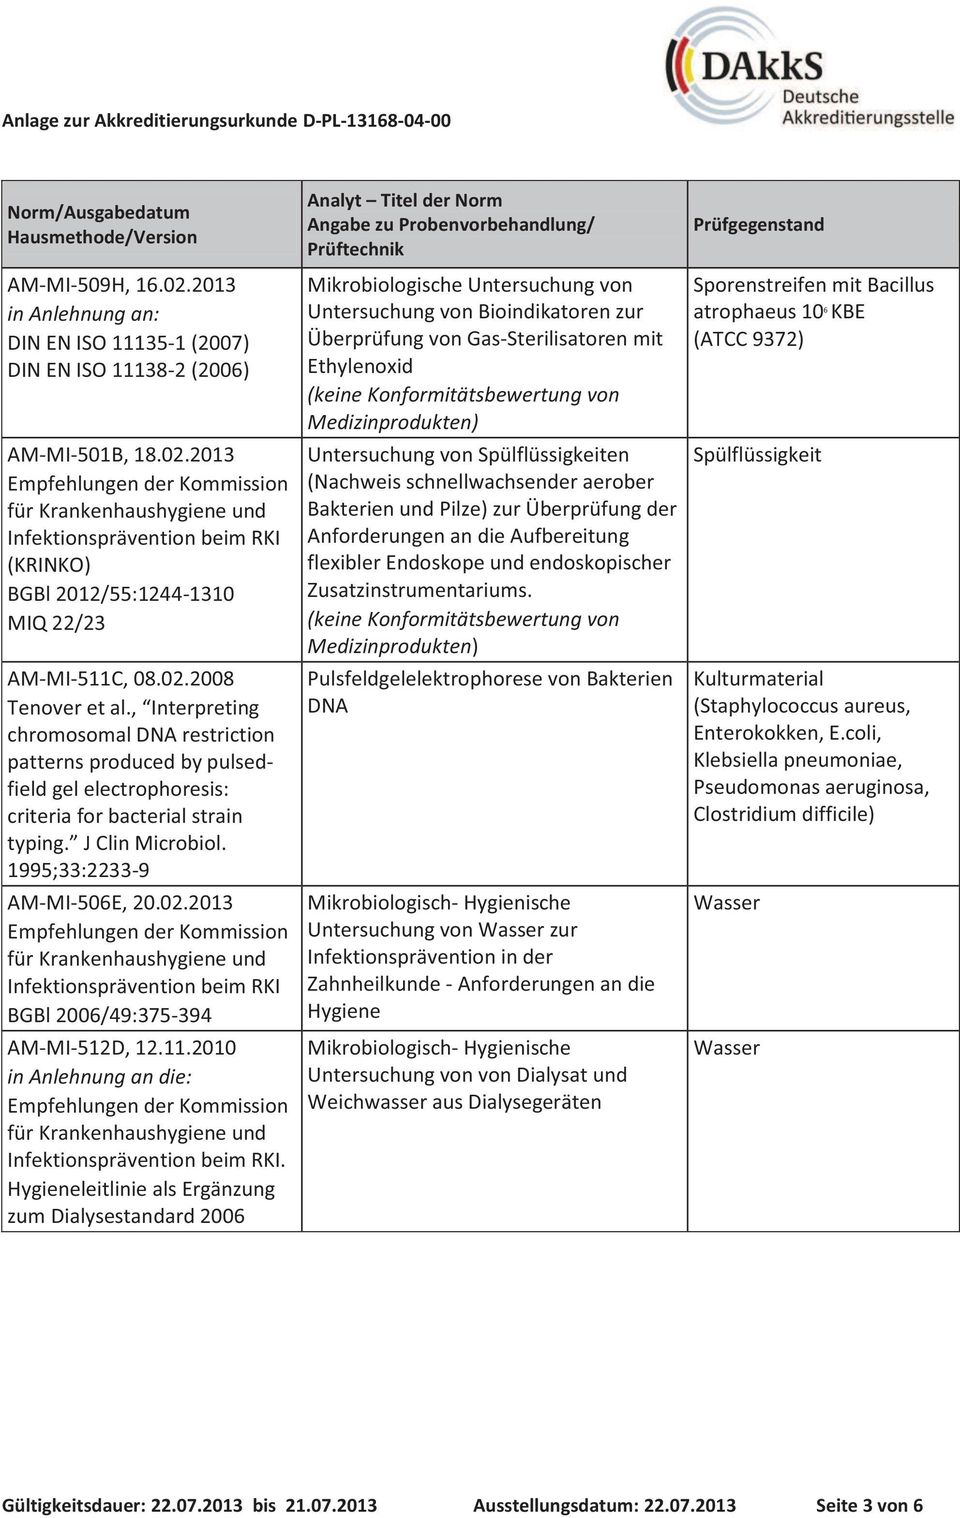 1995;33:2233-9 AM-MI-506E, 20.02.2013 Empfehlungen der Kommission für Krankenhaushygiene und Infektionsprävention beim RKI BGBl 2006/49:375-394 AM-MI-512D, 12.11.